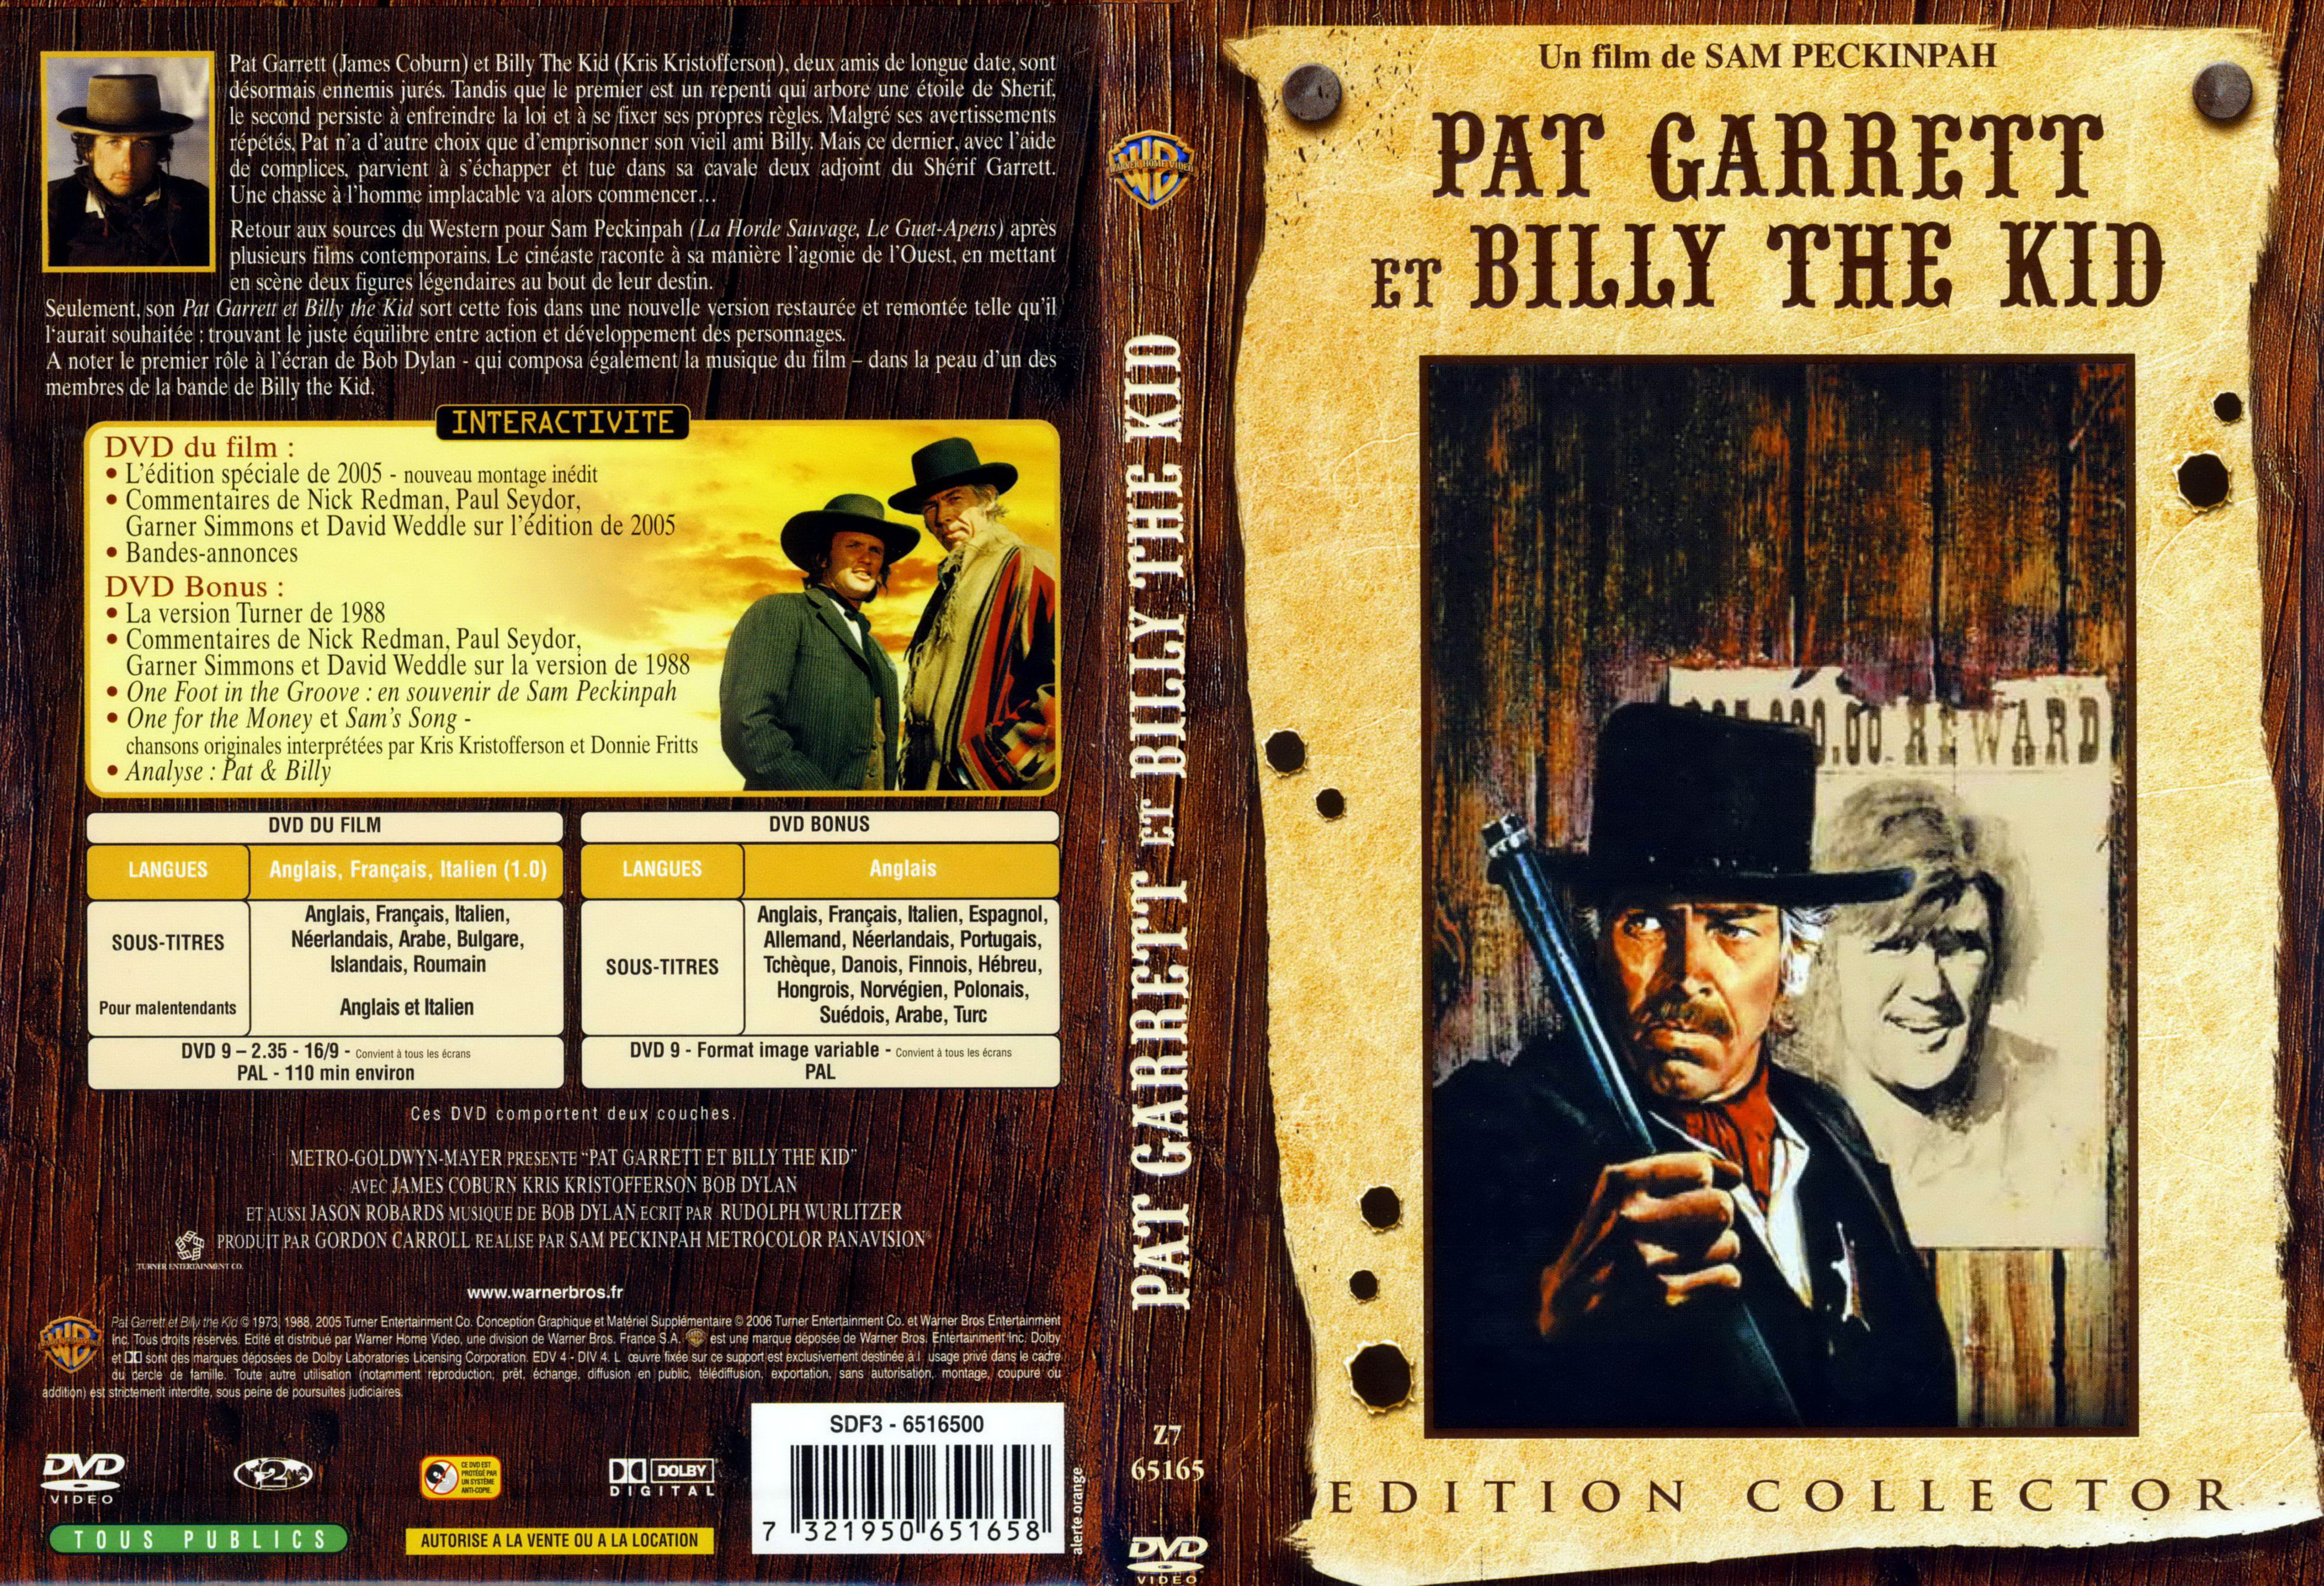 Jaquette DVD Pat Garrett et Billy the kid